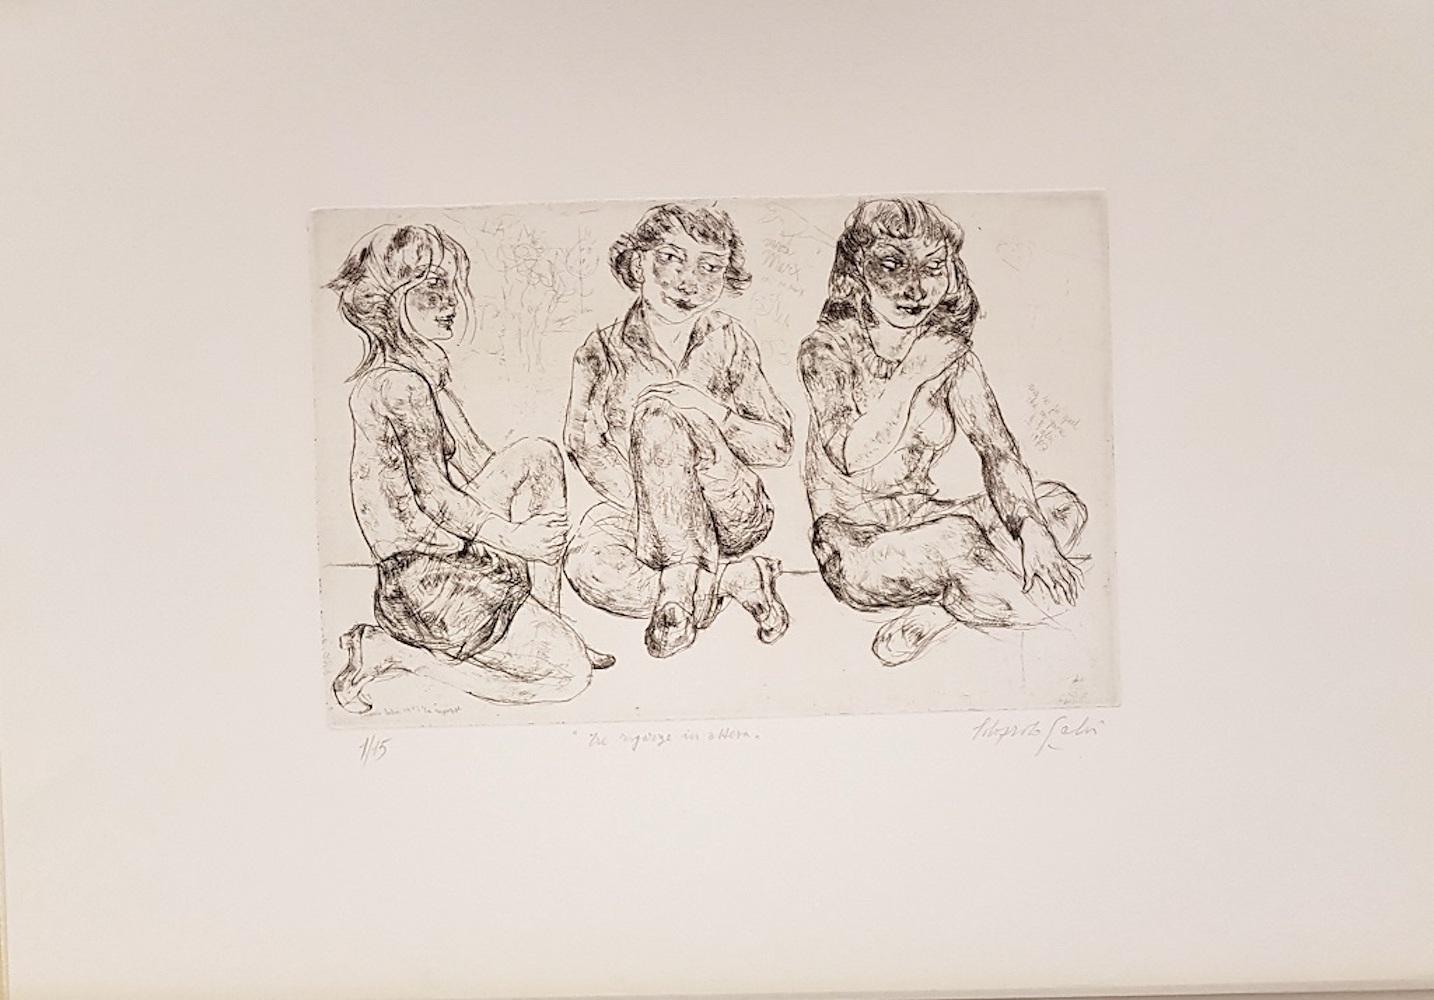 Edoardo Salvi Figurative Print - Three Girls Waiting - Original Etching 1873